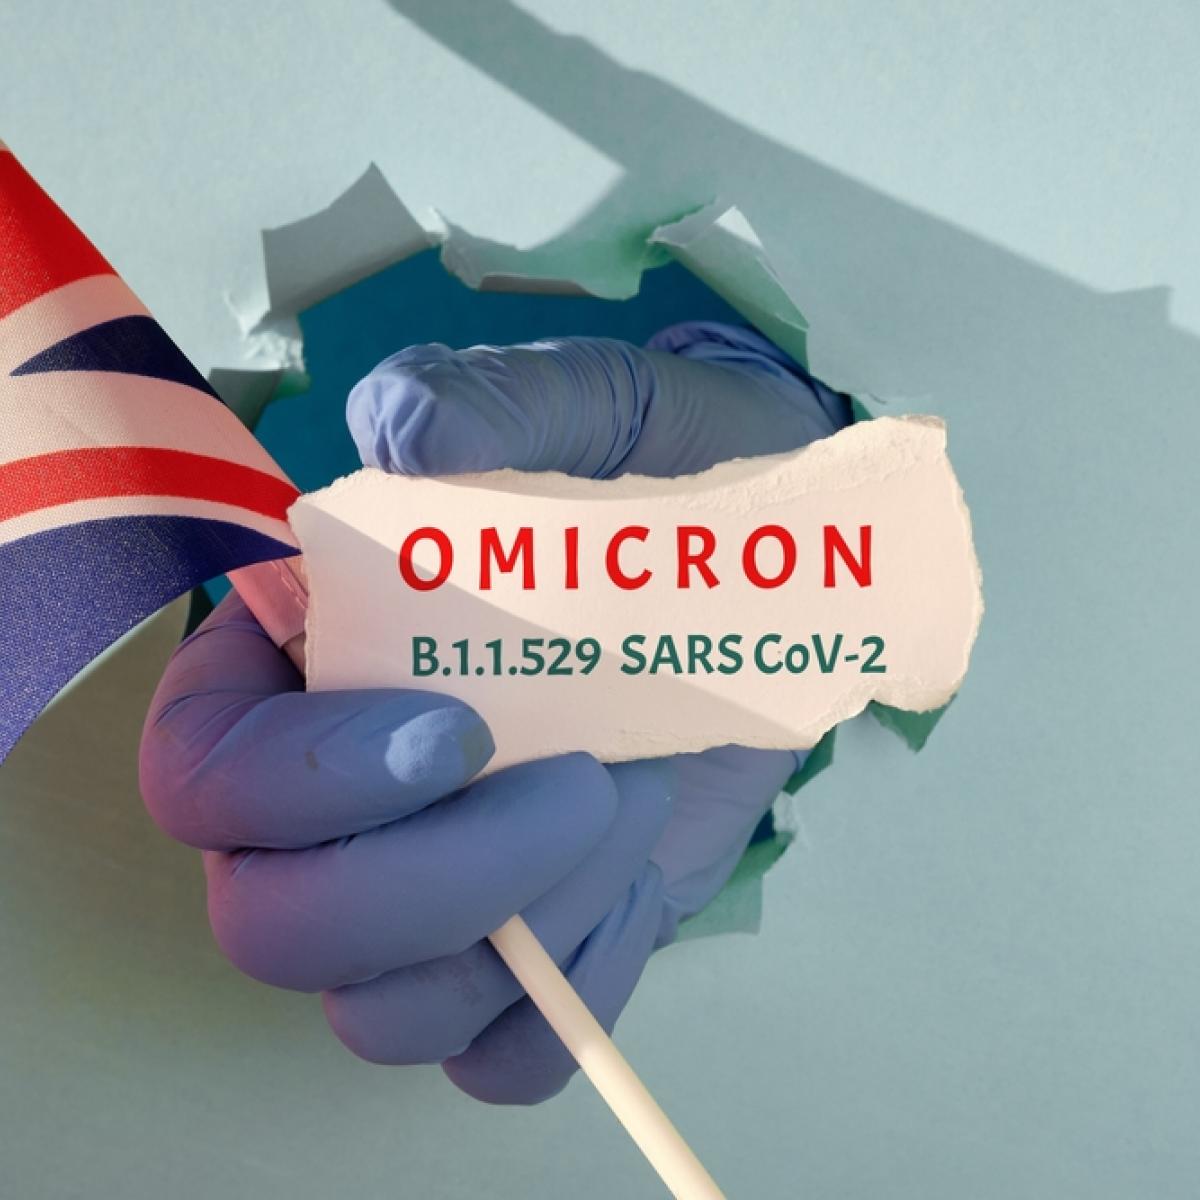 Βρετανία- Covid-19: Η Όμικρον είναι μια πολύ σοβαρή απειλή, λέει ο αρχίατρος της Αγγλίας